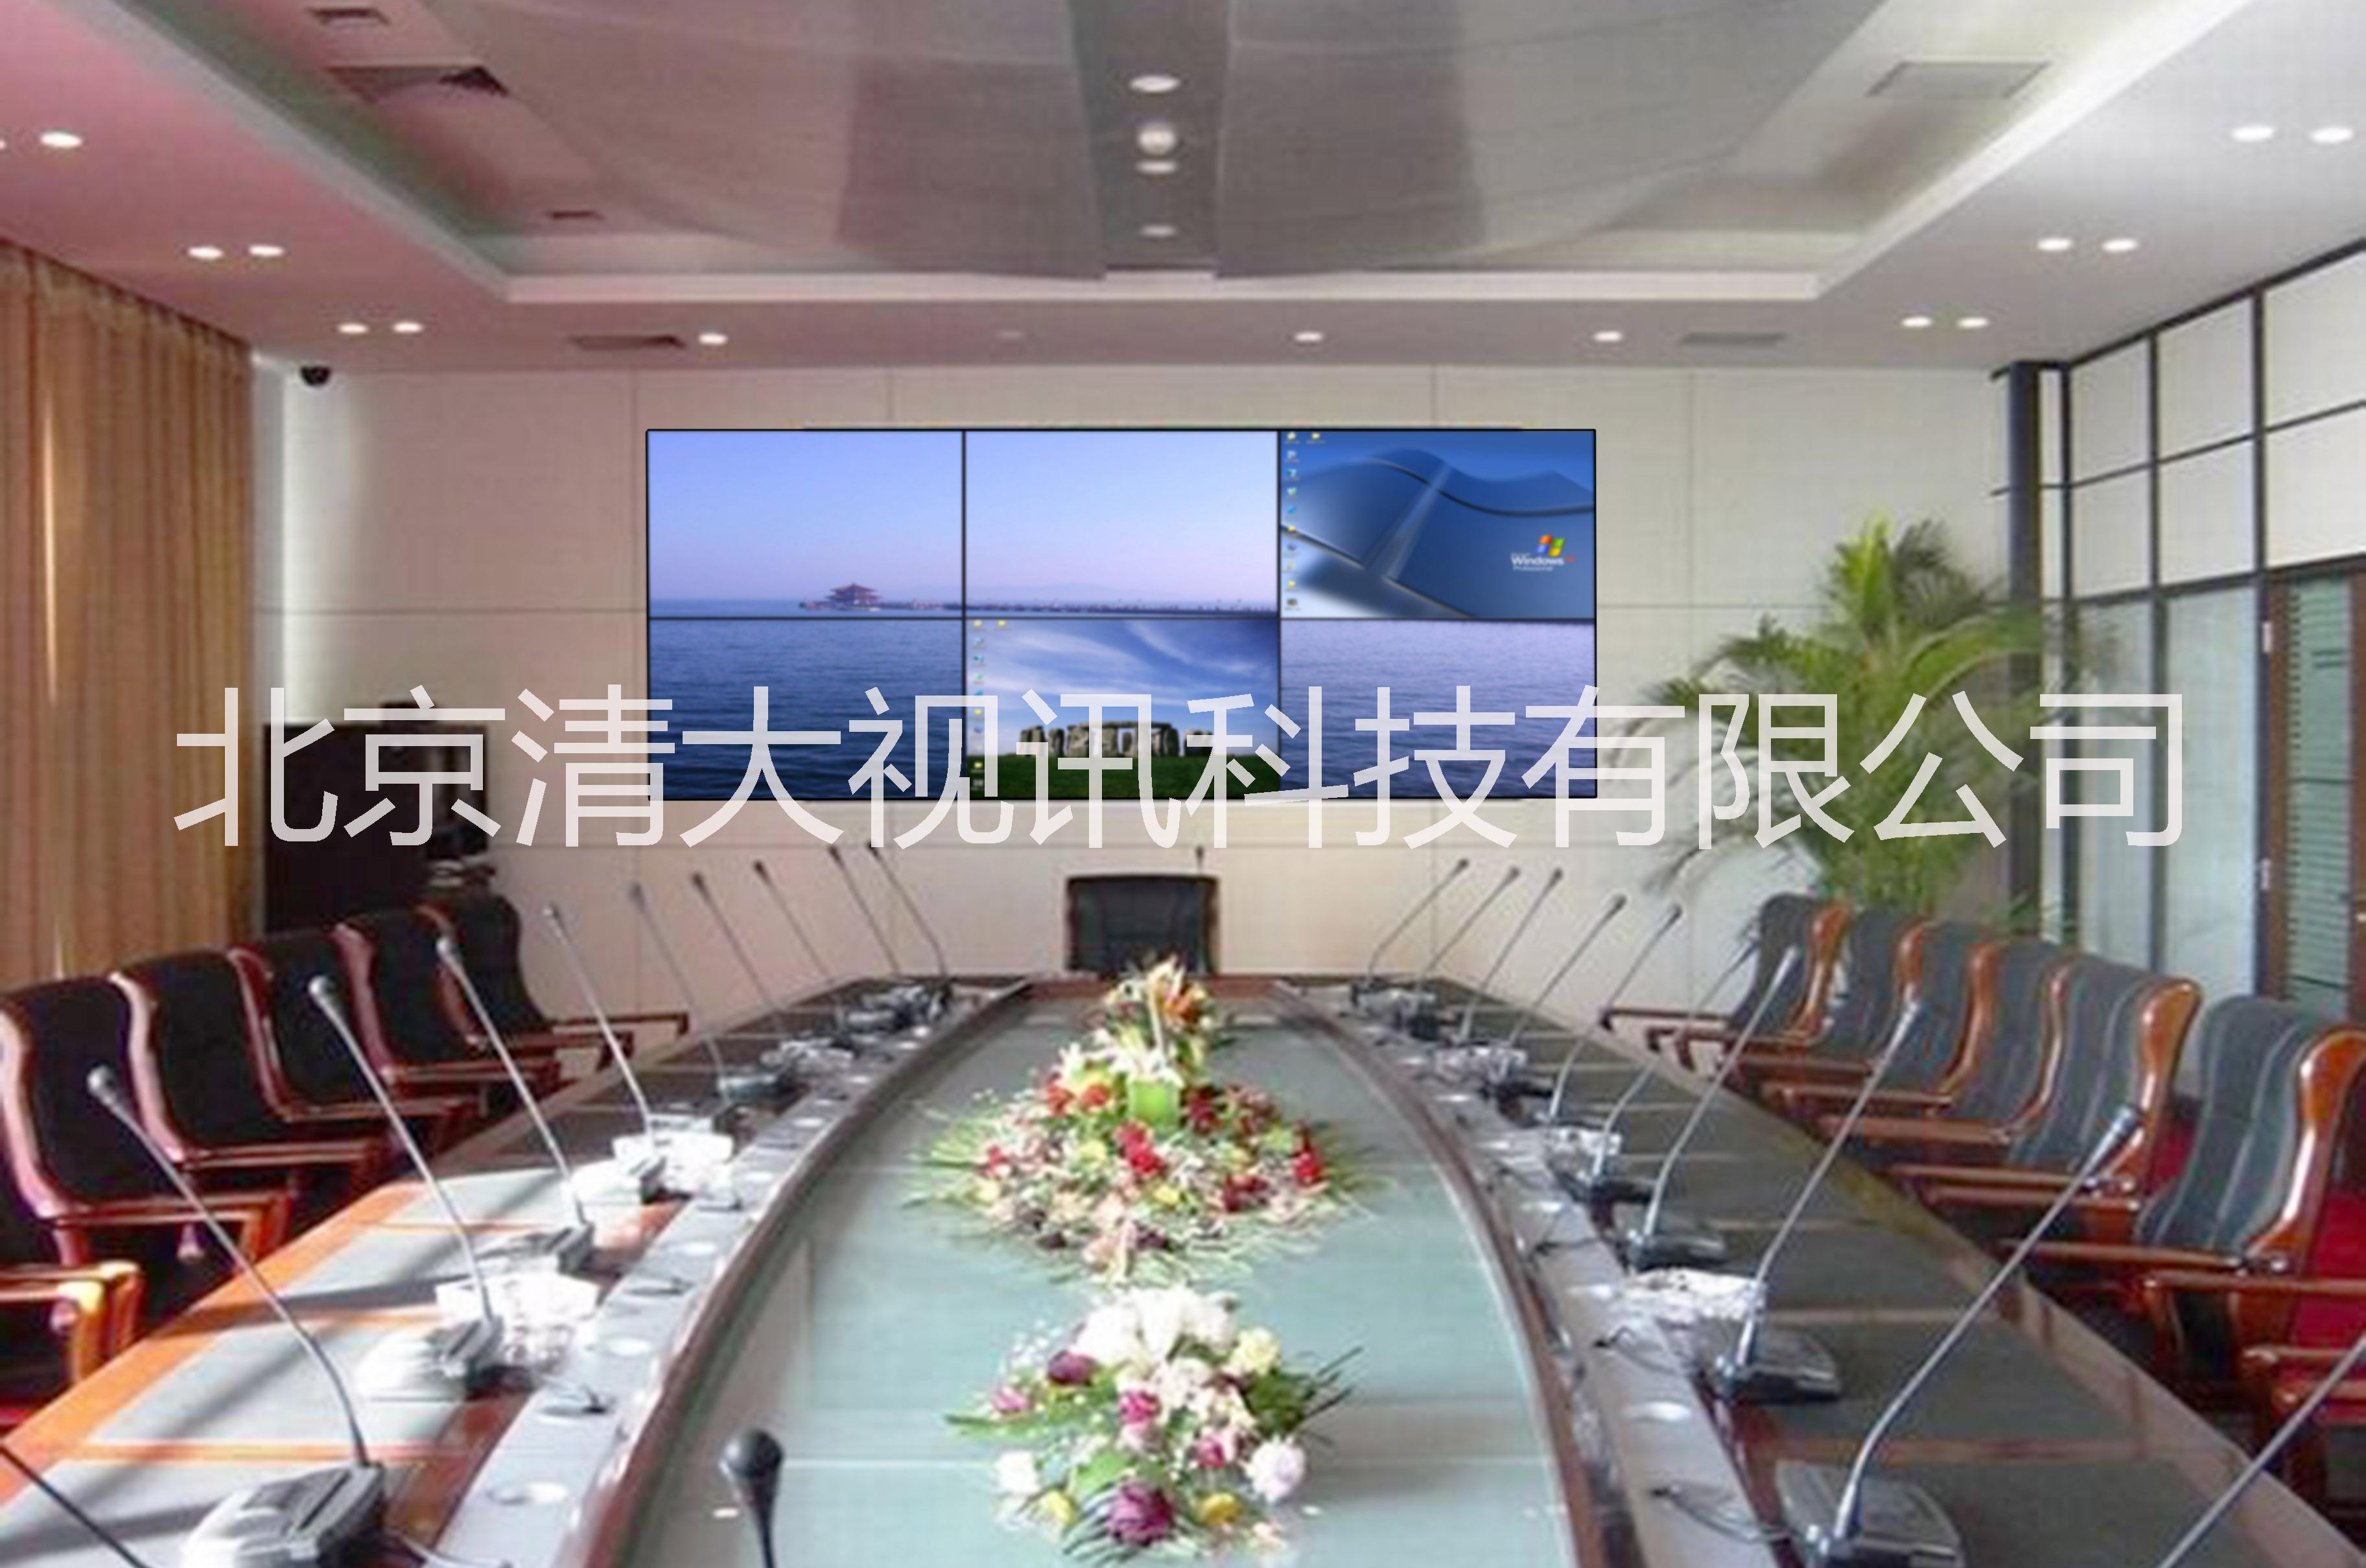 供应用于安防指挥的北京液晶显示拼接屏图片